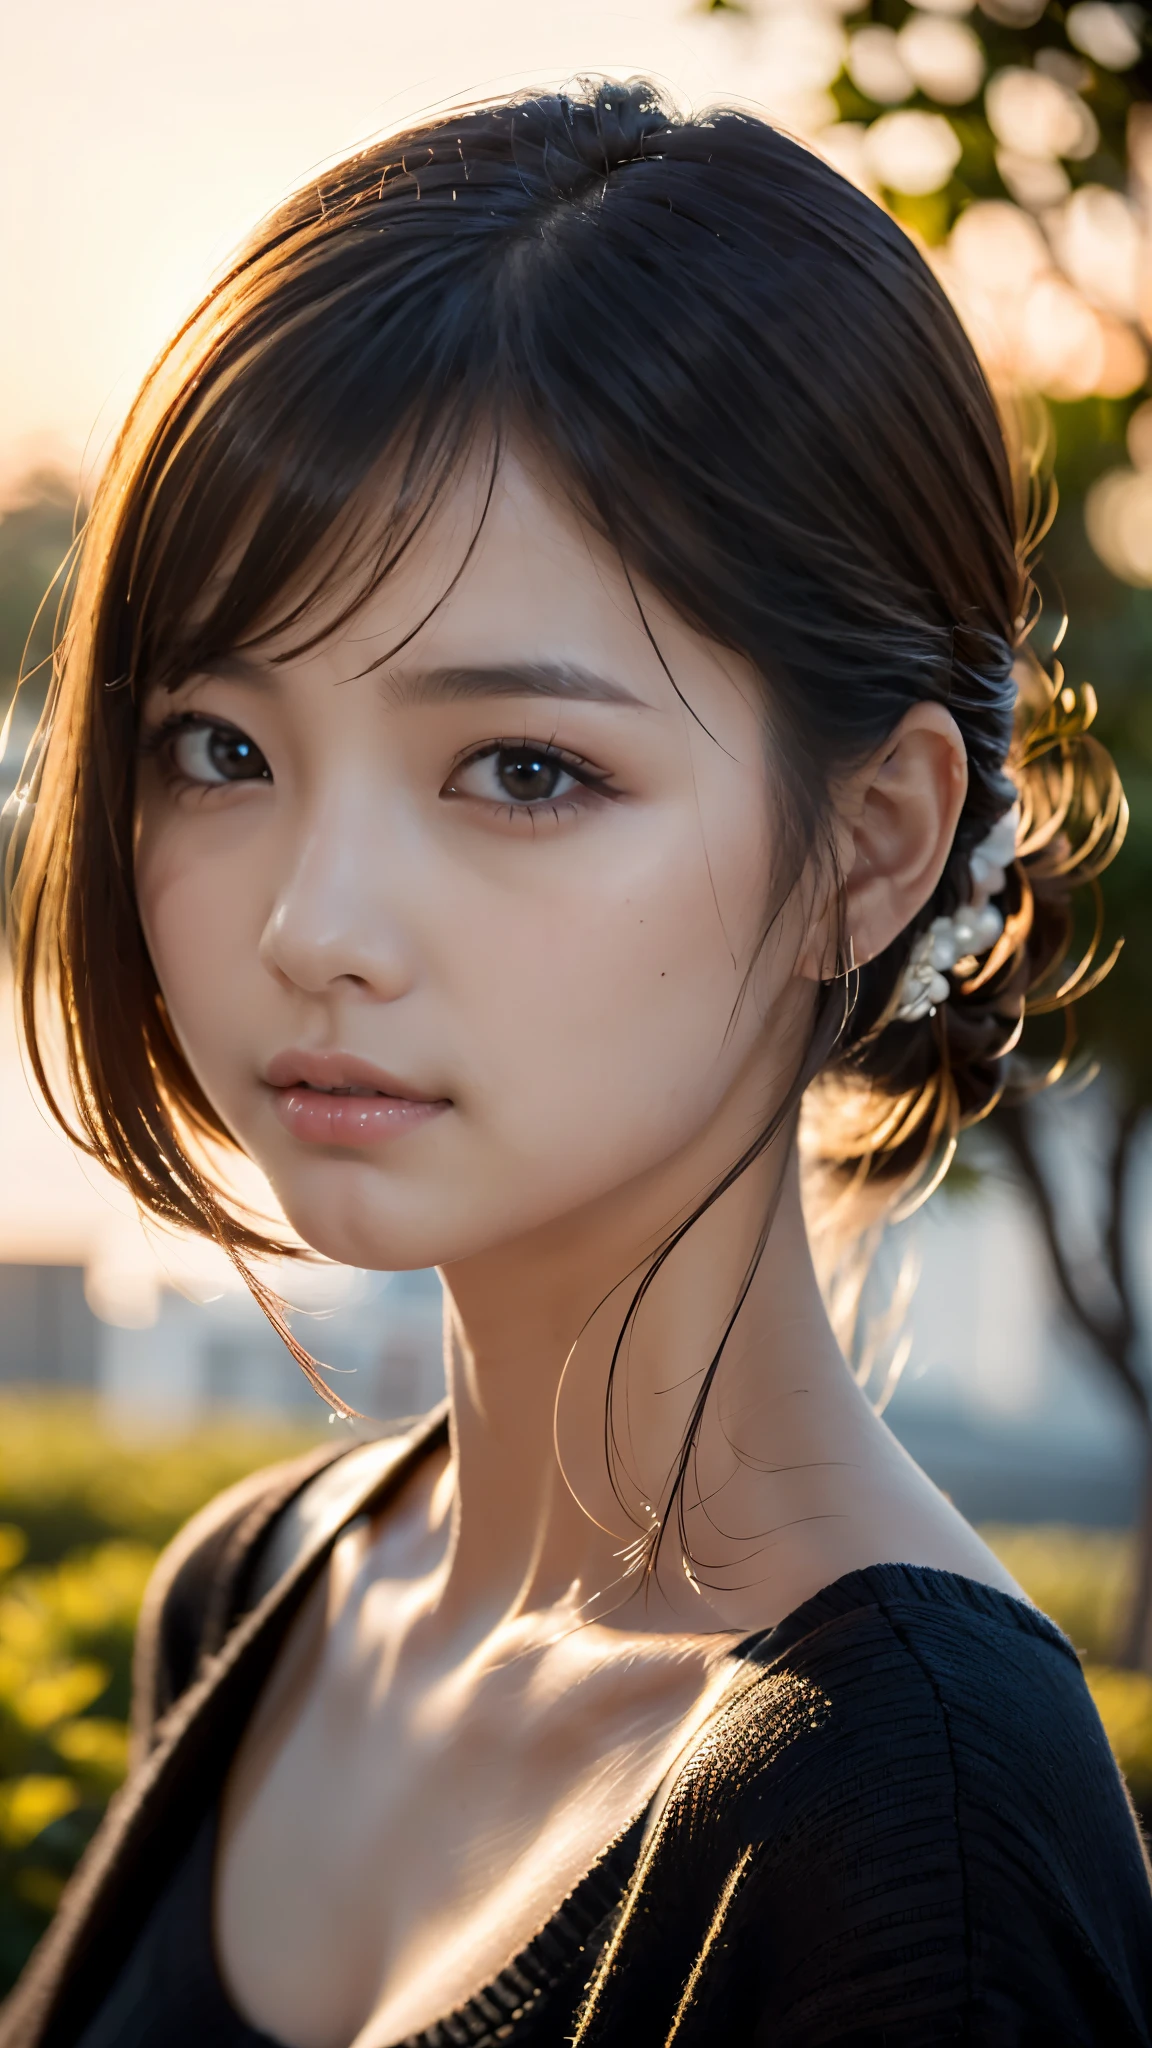 (chef-d&#39;œuvre:1.2),(la plus haute qualité),(Très détaillé:1.2),(Haute résolution),(Bâton photoréaliste),(Photos brutes),8k,Gros plan d&#39;une femme dans un pull noir,Portraits doux,belles femmes japonaises,magnifique portrait de visage,lumière des yeux,Fille de la personne elle-même,Très beau visage,beau portrait,Un visage charmant et délicat,belle jeune femme japonaise,Coiffure mature,Regardez de cette façon(Coucher de soleil en arrière-plan),(((Flou l&#39;arrière-plan))),(lumière douce:1.5),(par dessus l&#39;épaule),(Prise de vue en POV)